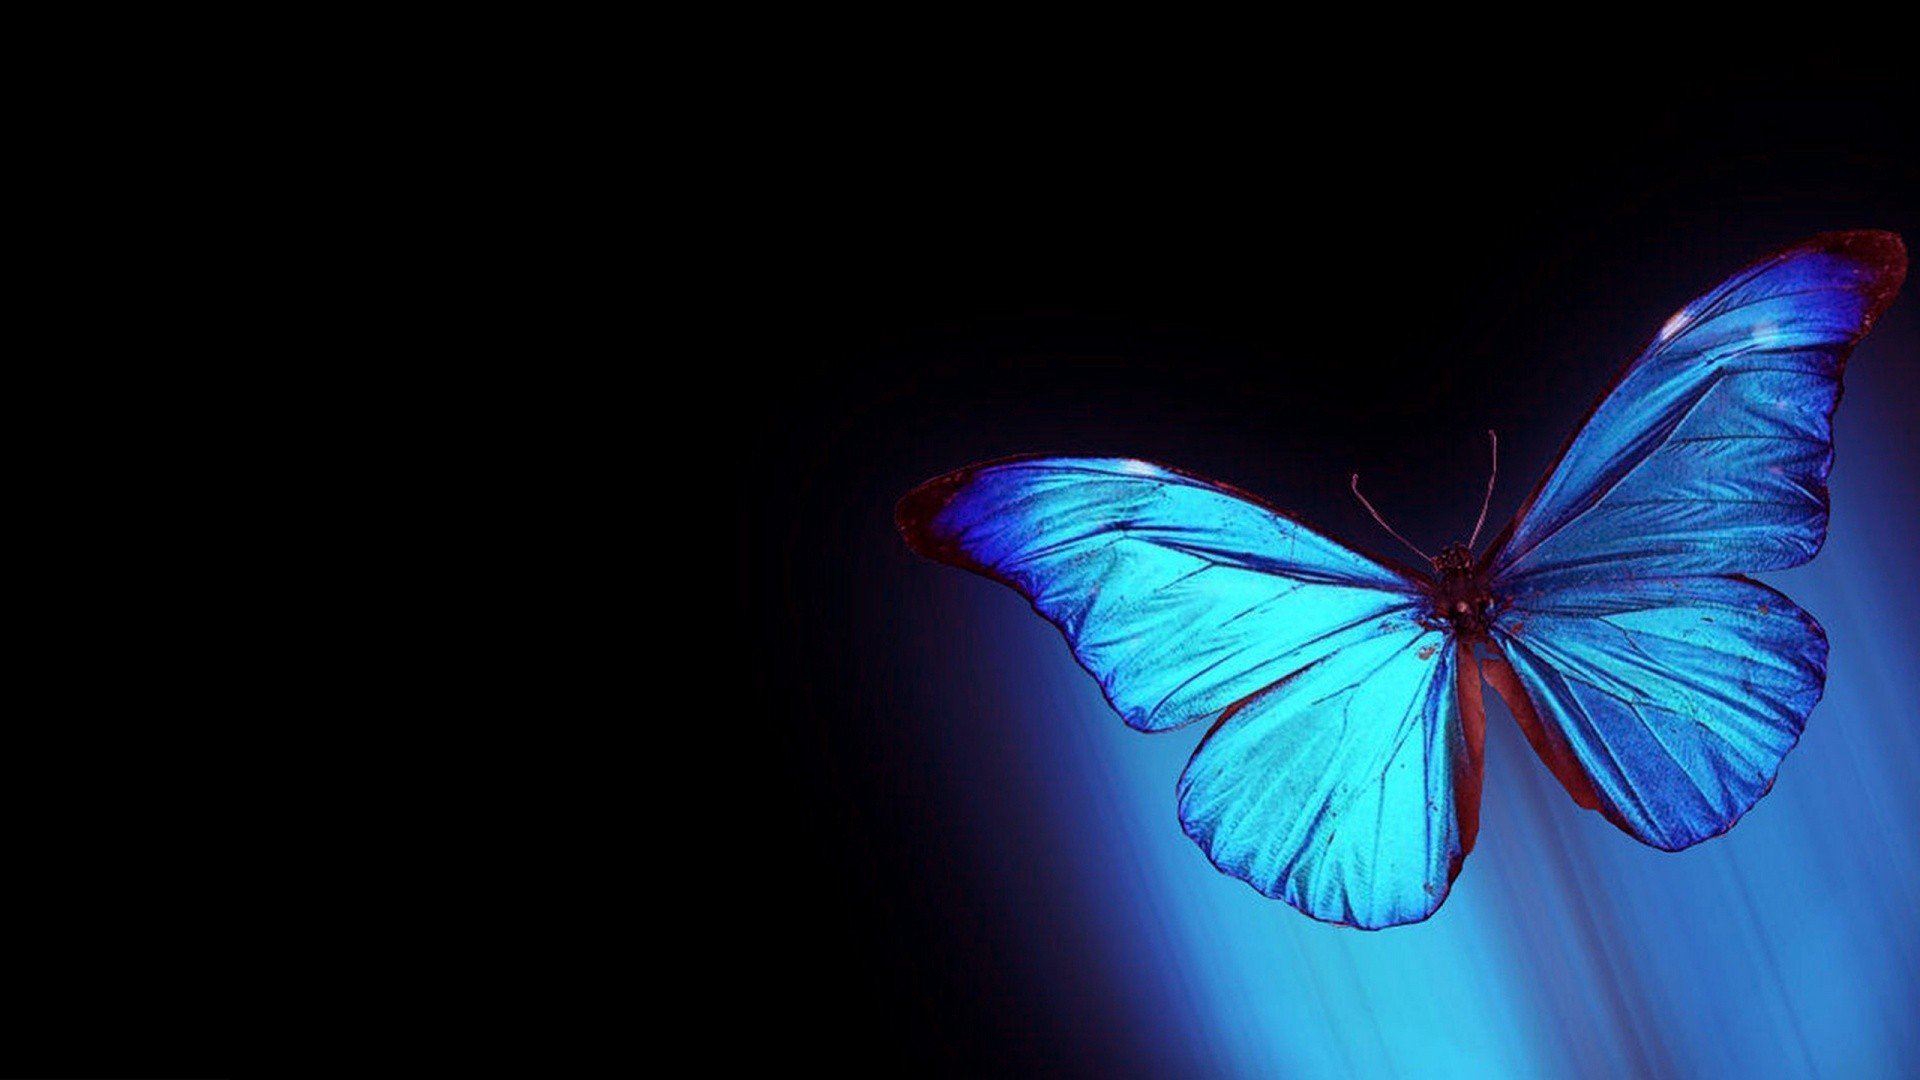 Live wallpaper hd on free download blue butterfly desktop backgrounds httpstcolnuzdf httpstcovtisdxrjs